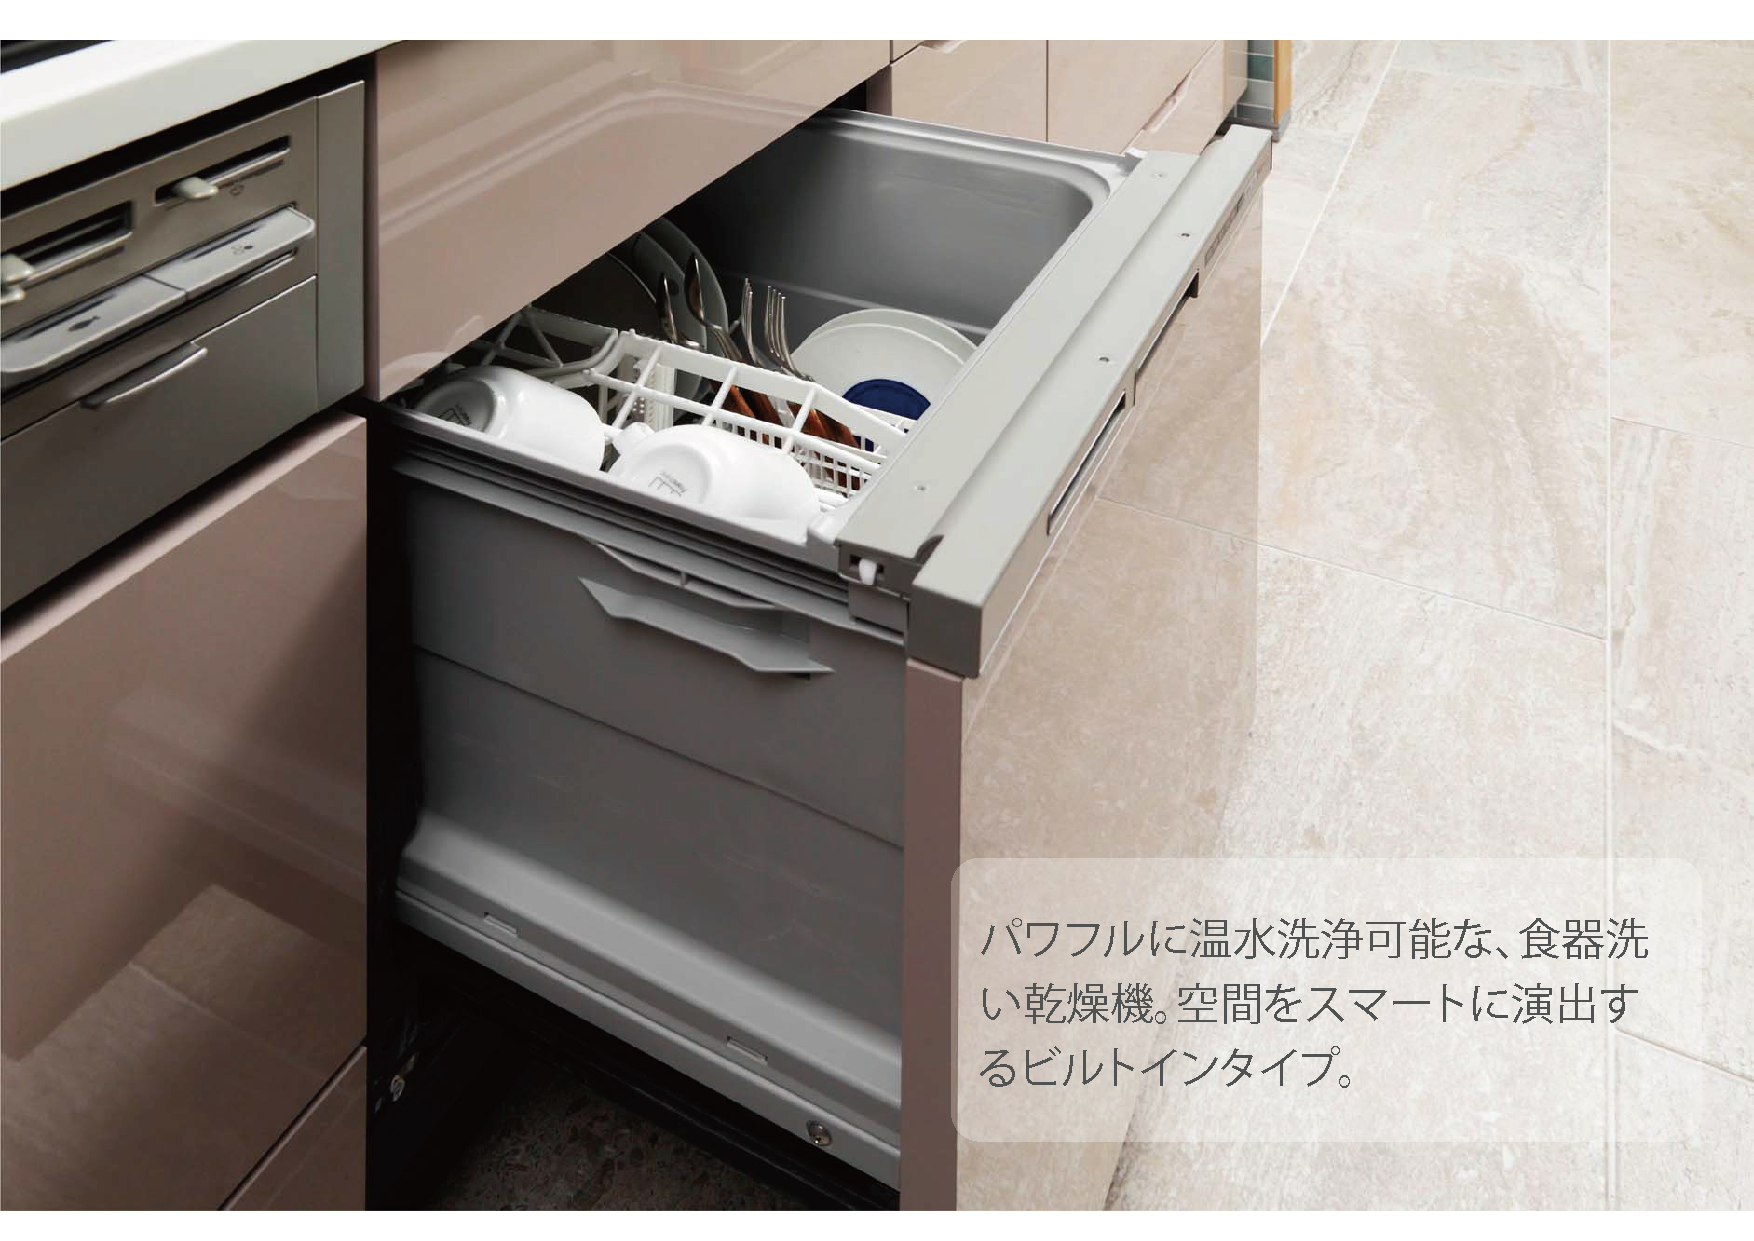 [image]食器洗い乾燥機 イメージ